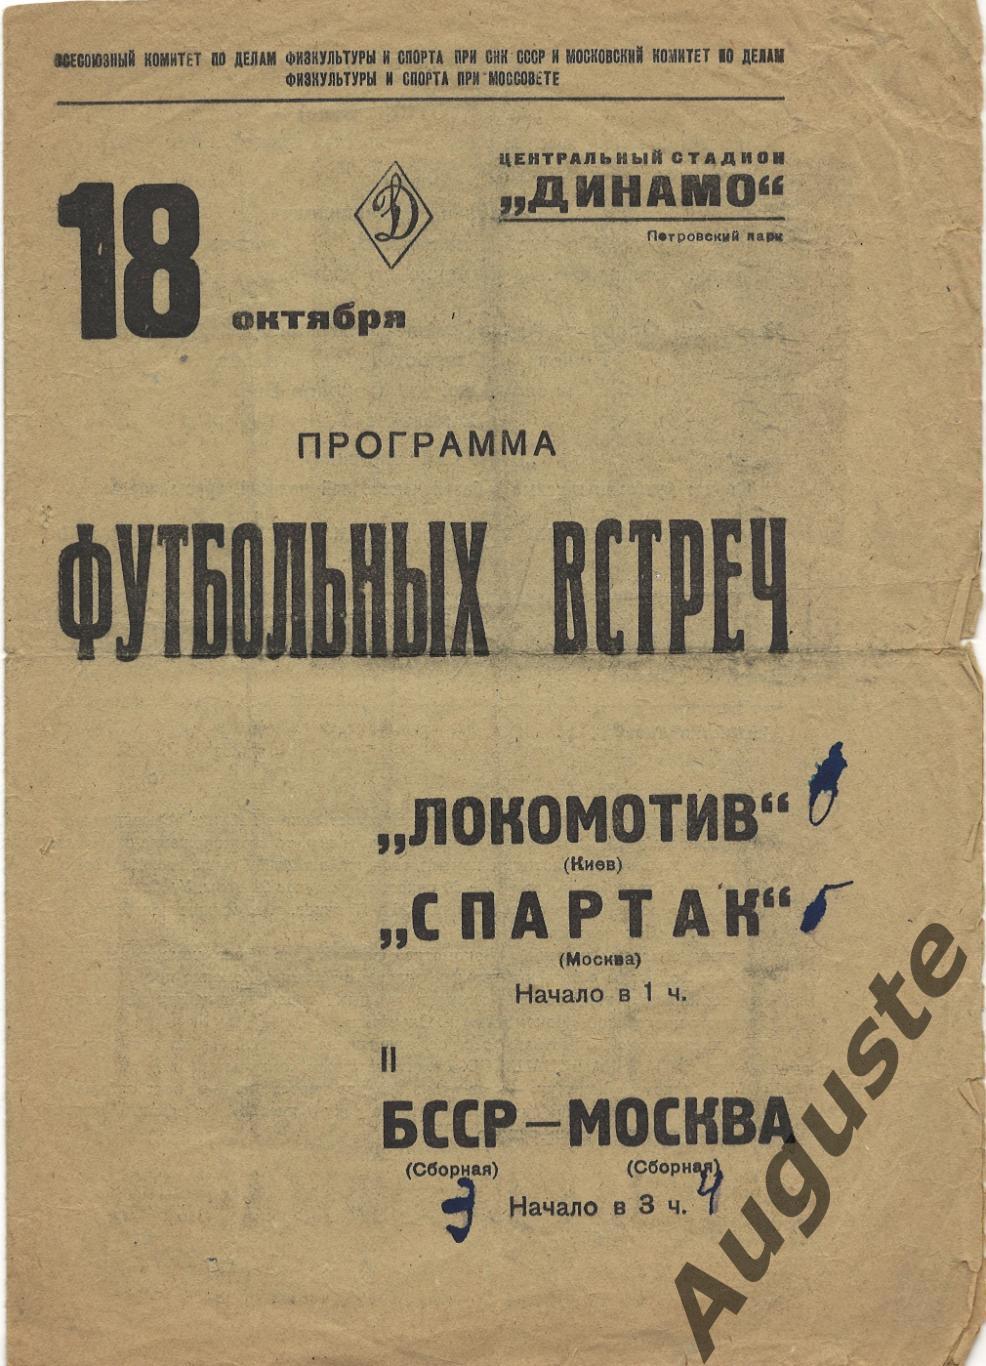 Спартак Москва – Локомотив Киев. Первенство СССР. 18 октября 1938 г. Москва.